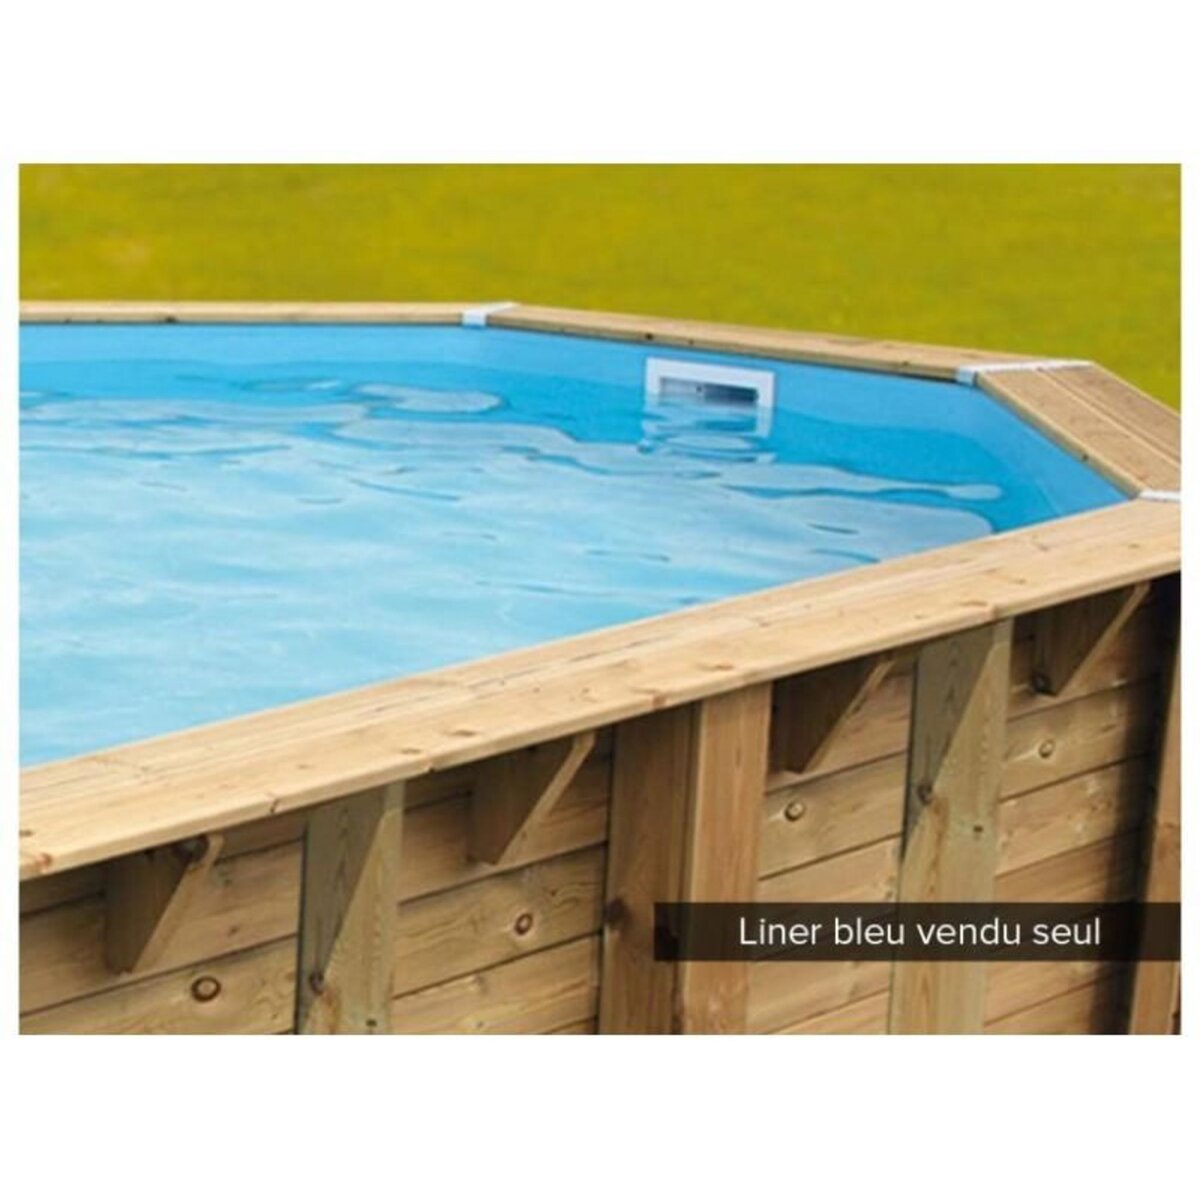 Ubbink Liner seul Bleu pour piscine bois Azura 4,30 x 3,00 x 1,26 m - Ubbink